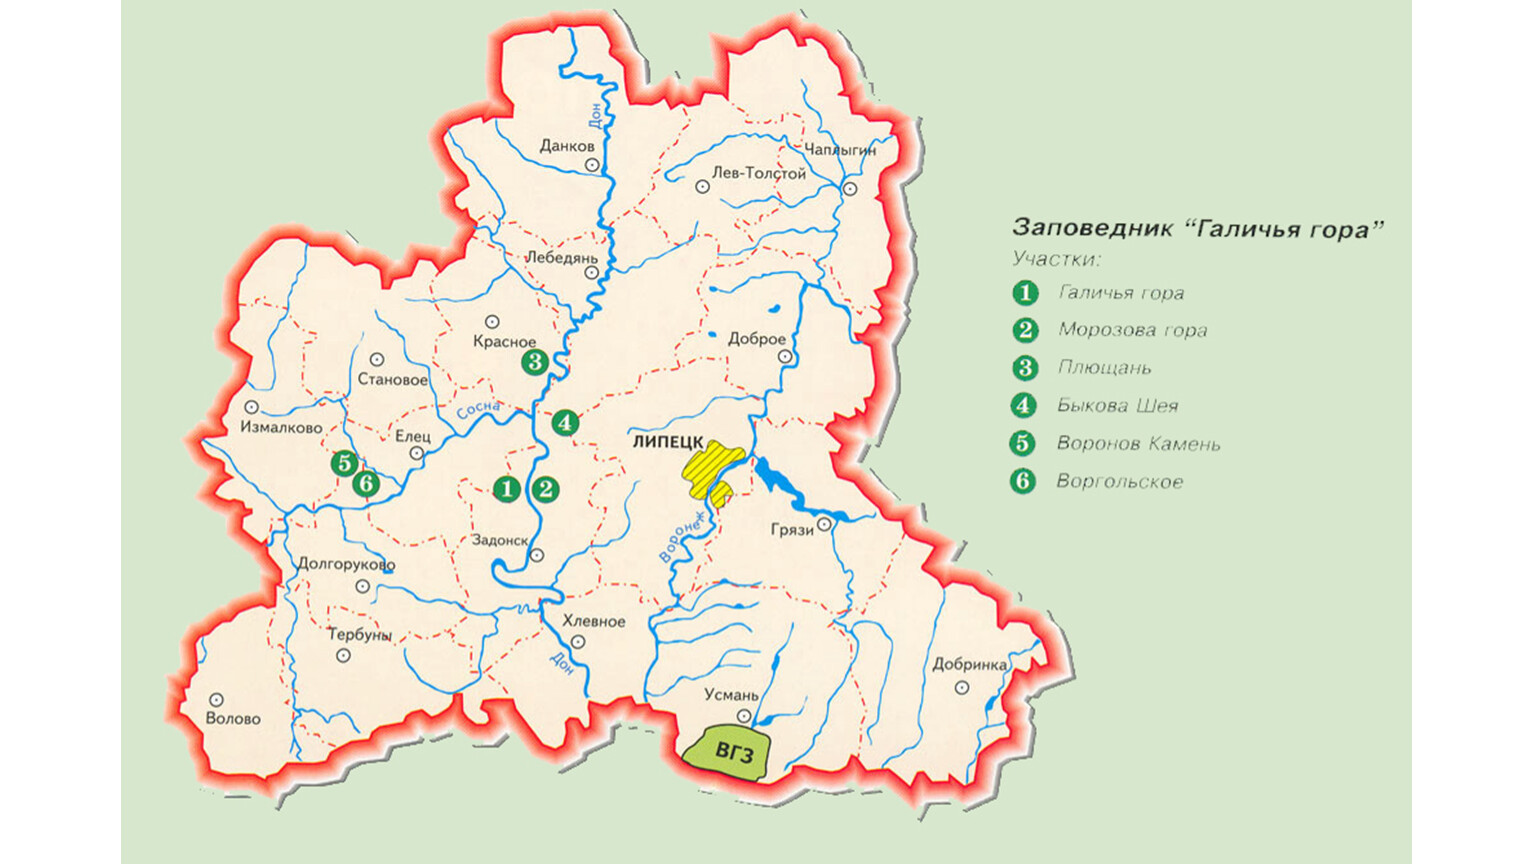 Заповедник Галичья гора в Липецкой области на карте